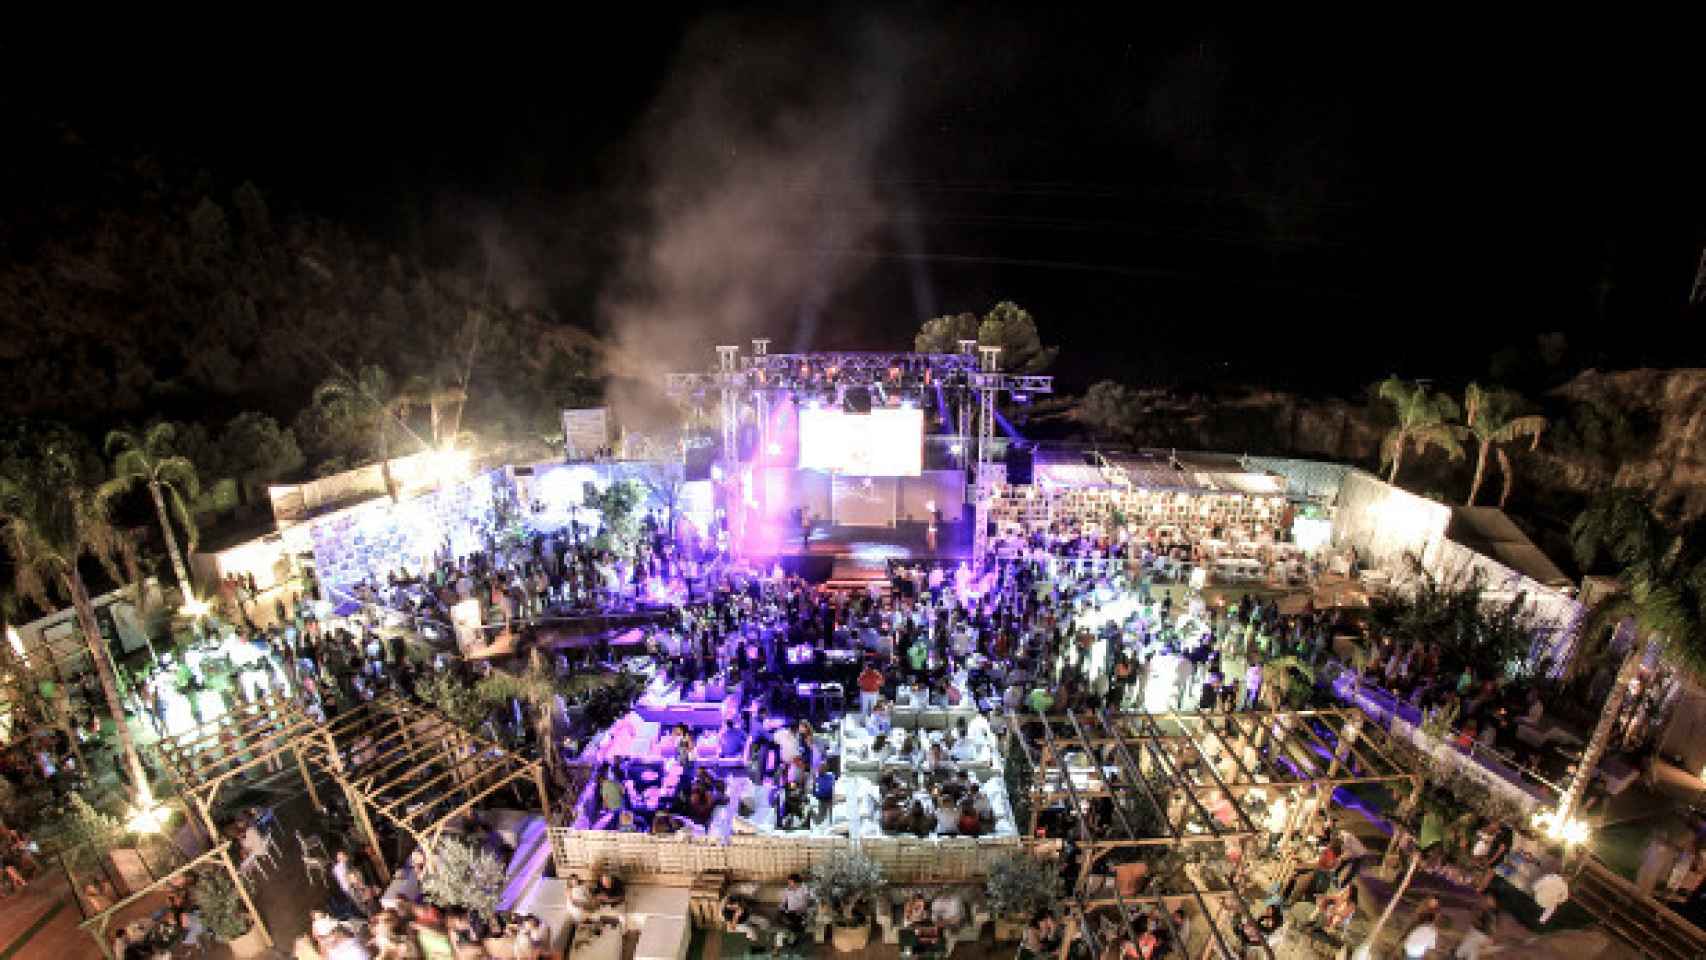 La zona de discoteca del evento Starlite Marbella 2016, donde Froilán pasó una gran noche.